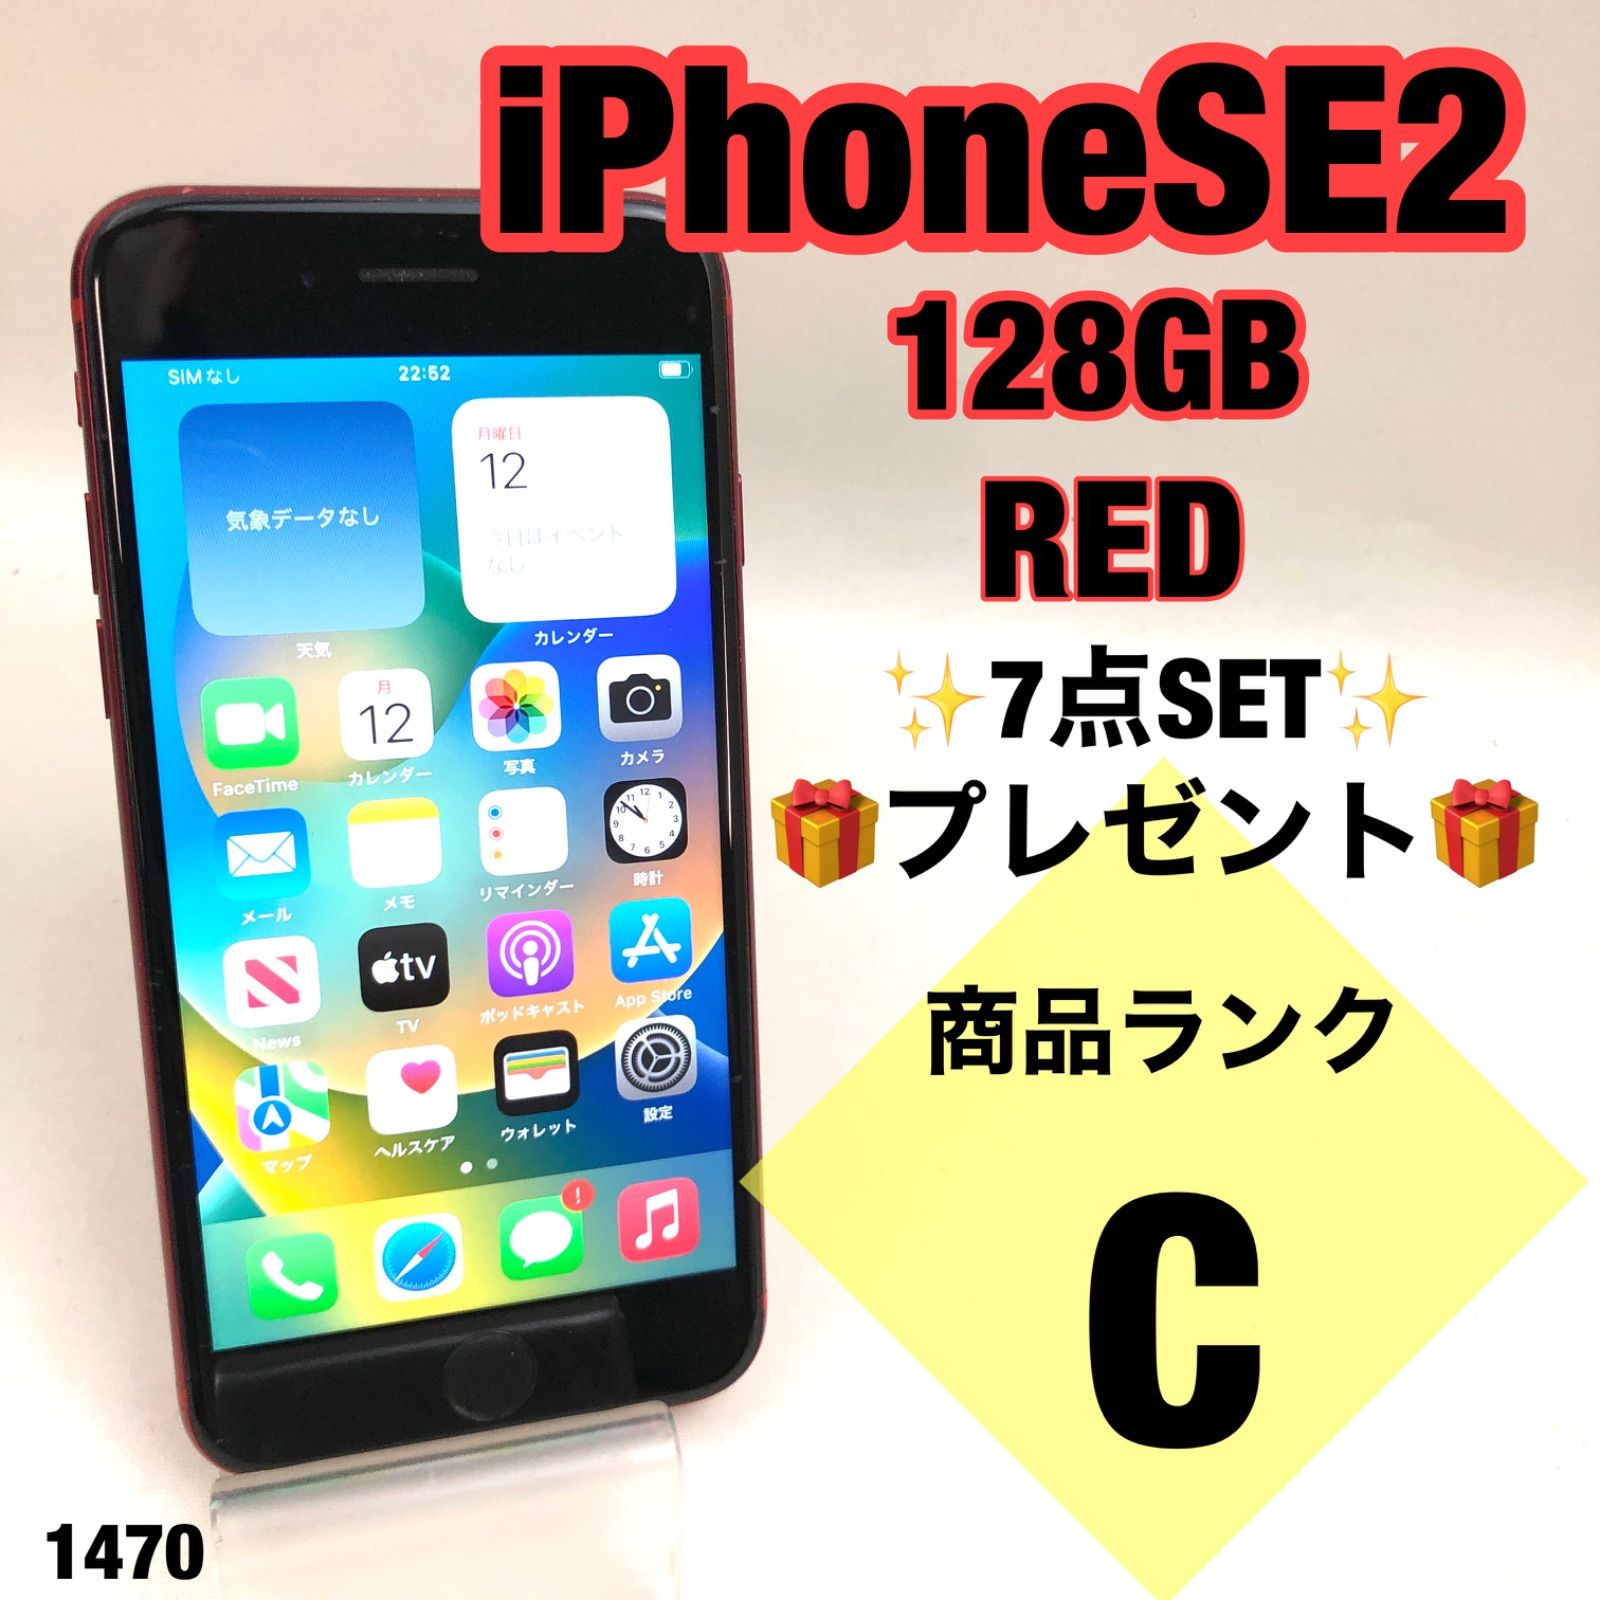 iPhone SE2 128GB 7点SETプレゼント - スマートフォン本体